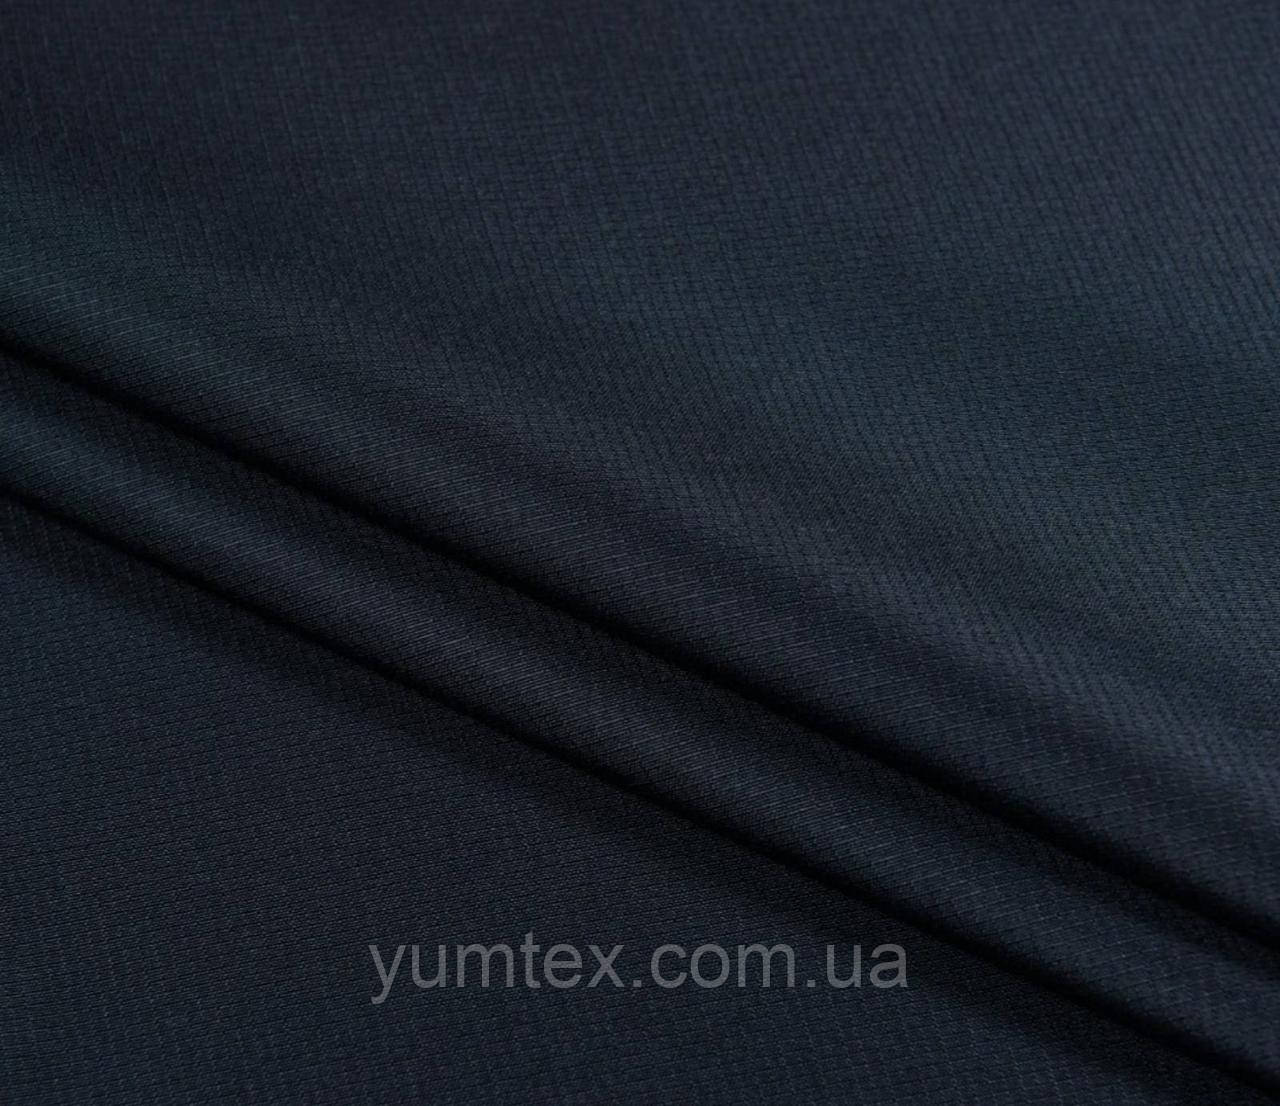 Тканина плащова рипстоп для спецодягання військової форми курток верхнього одягу темно-синій